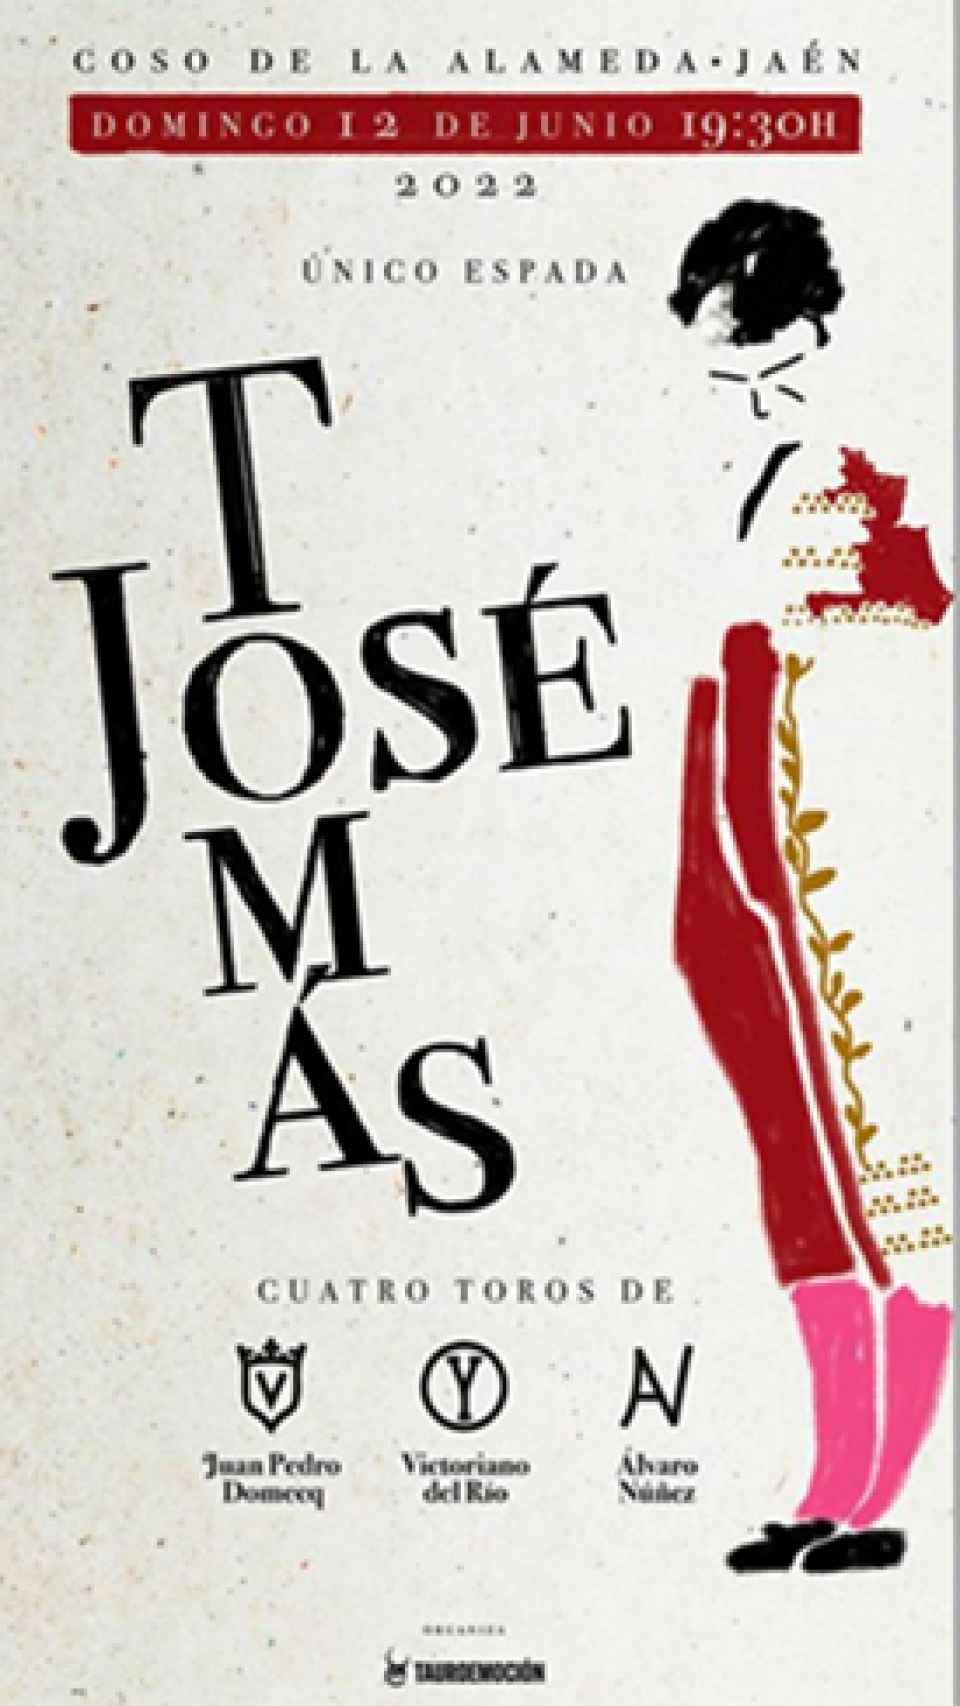 Jose Tomás